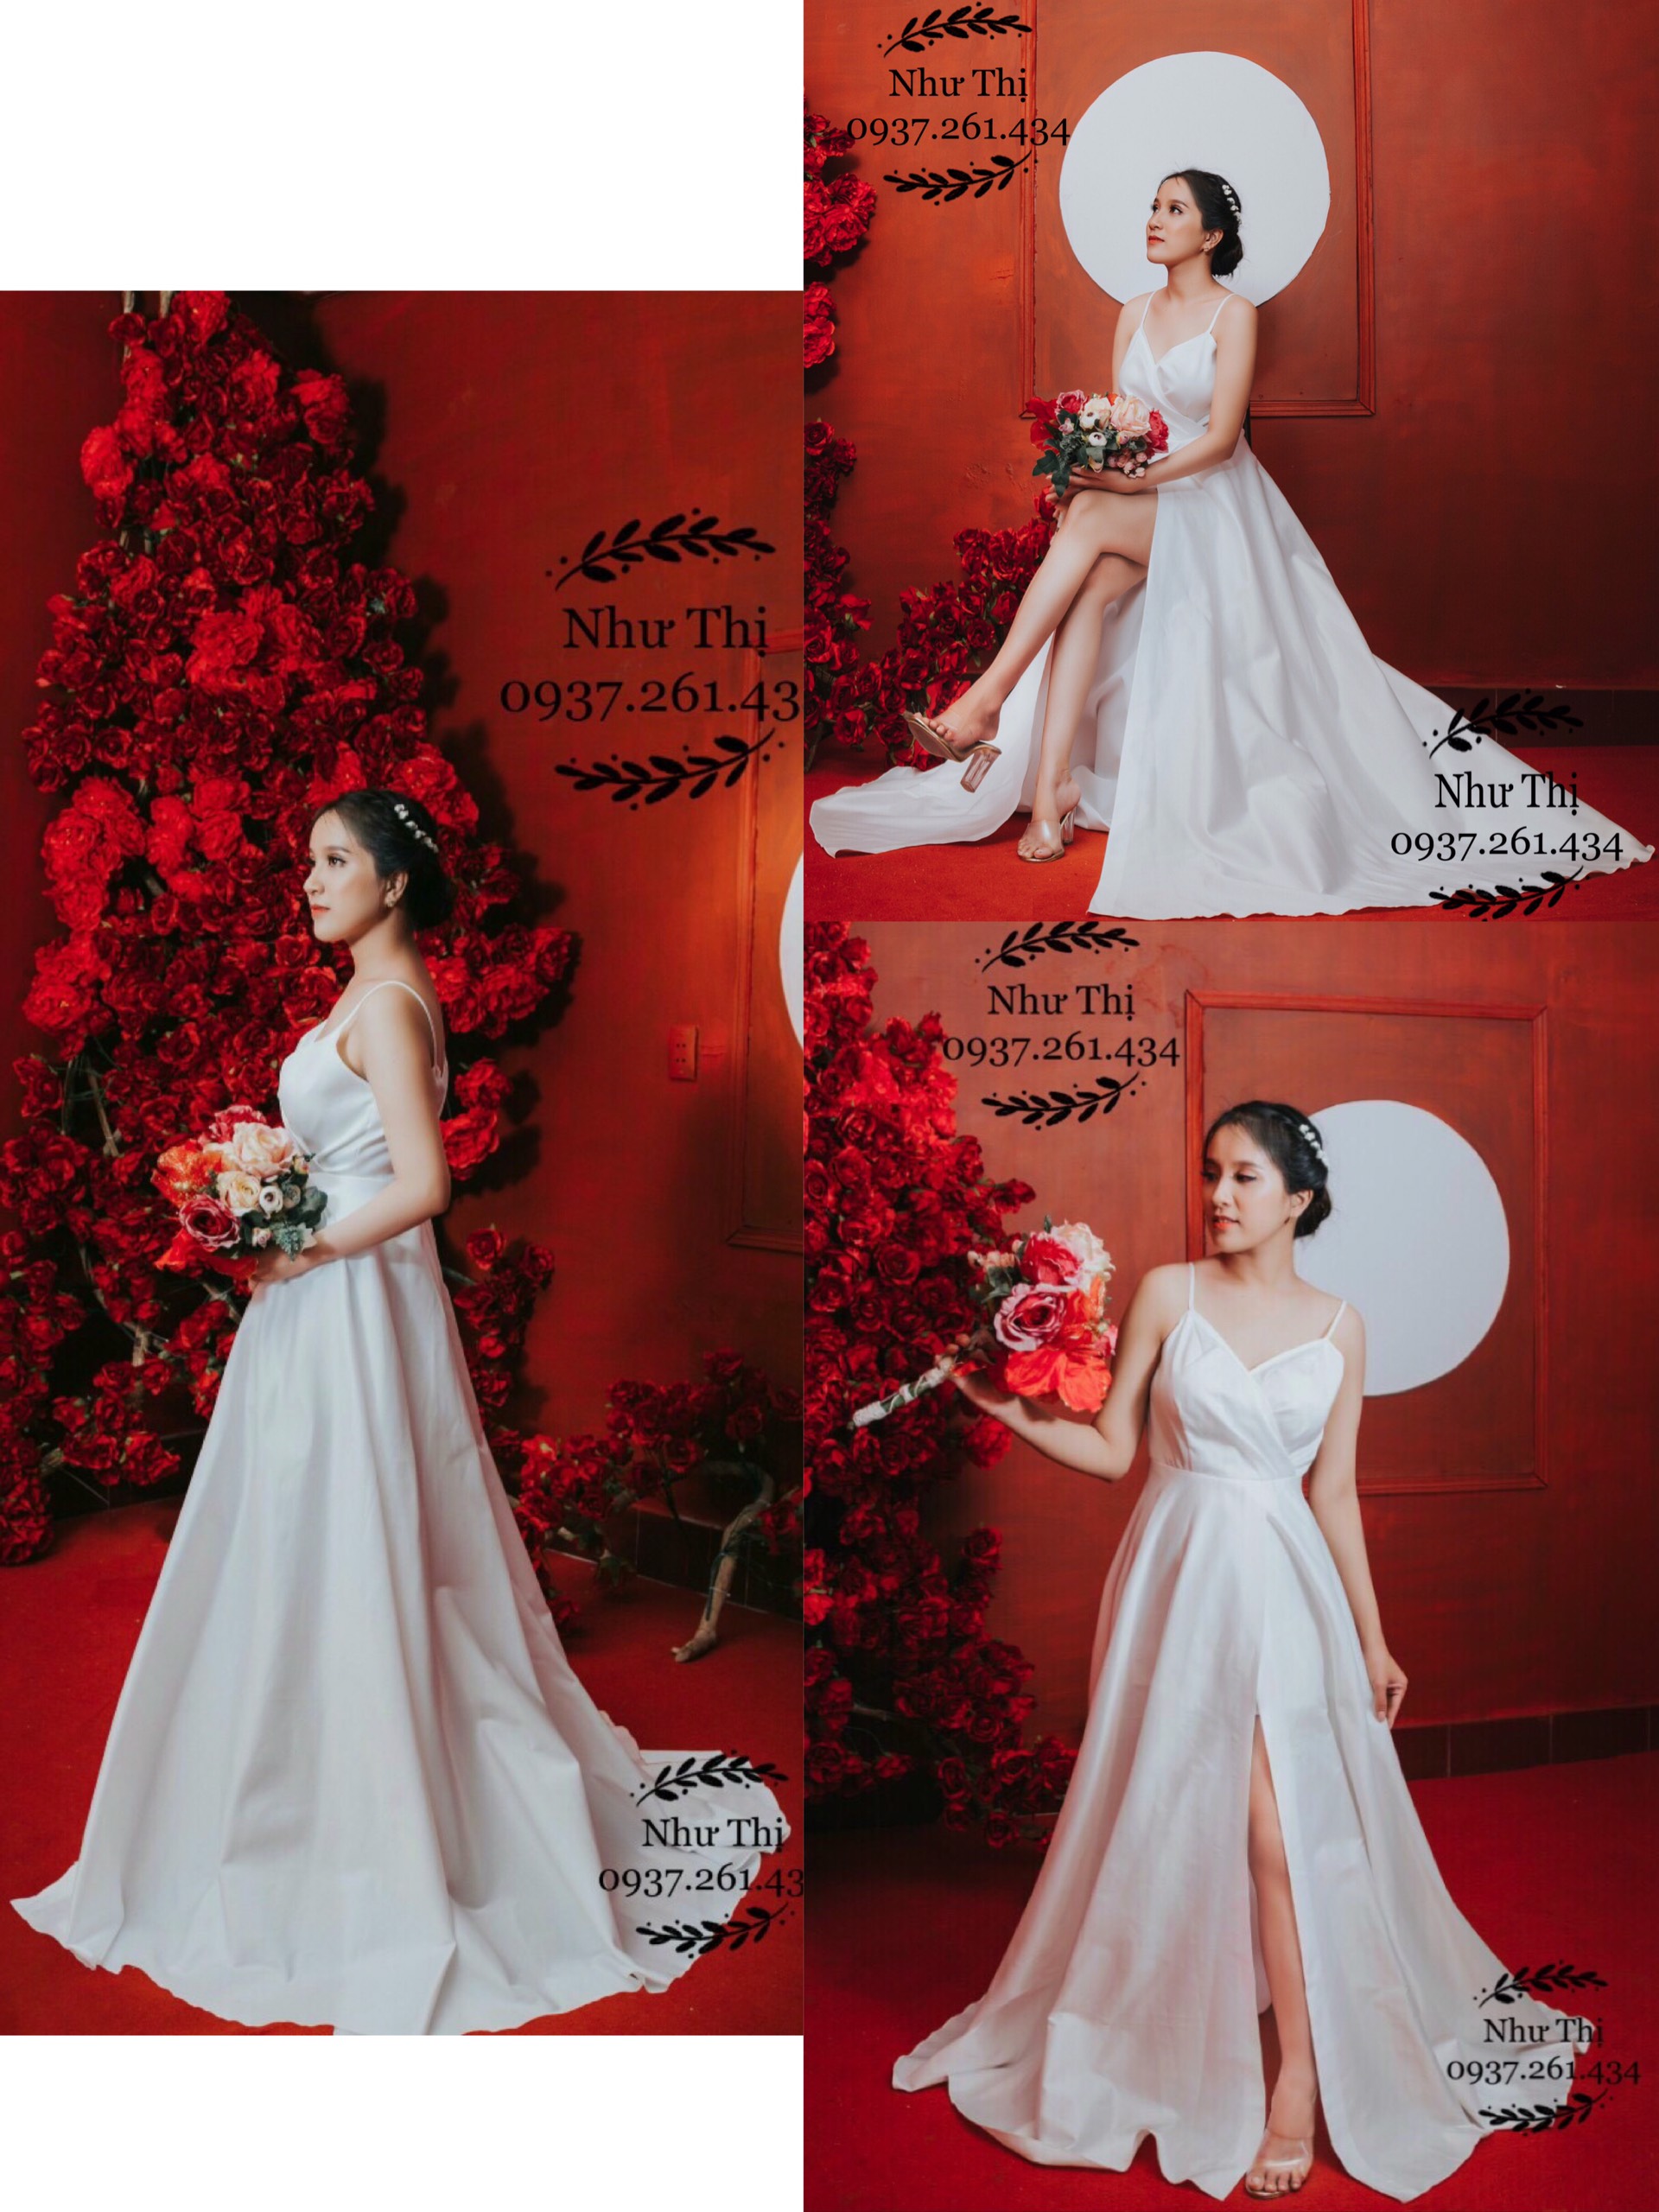 TIKTOK Những mẫu váy cưới hot nhất 2021váy cưới đẹp nhất cho nàng lựa  chọn mùa cưới  YouTube